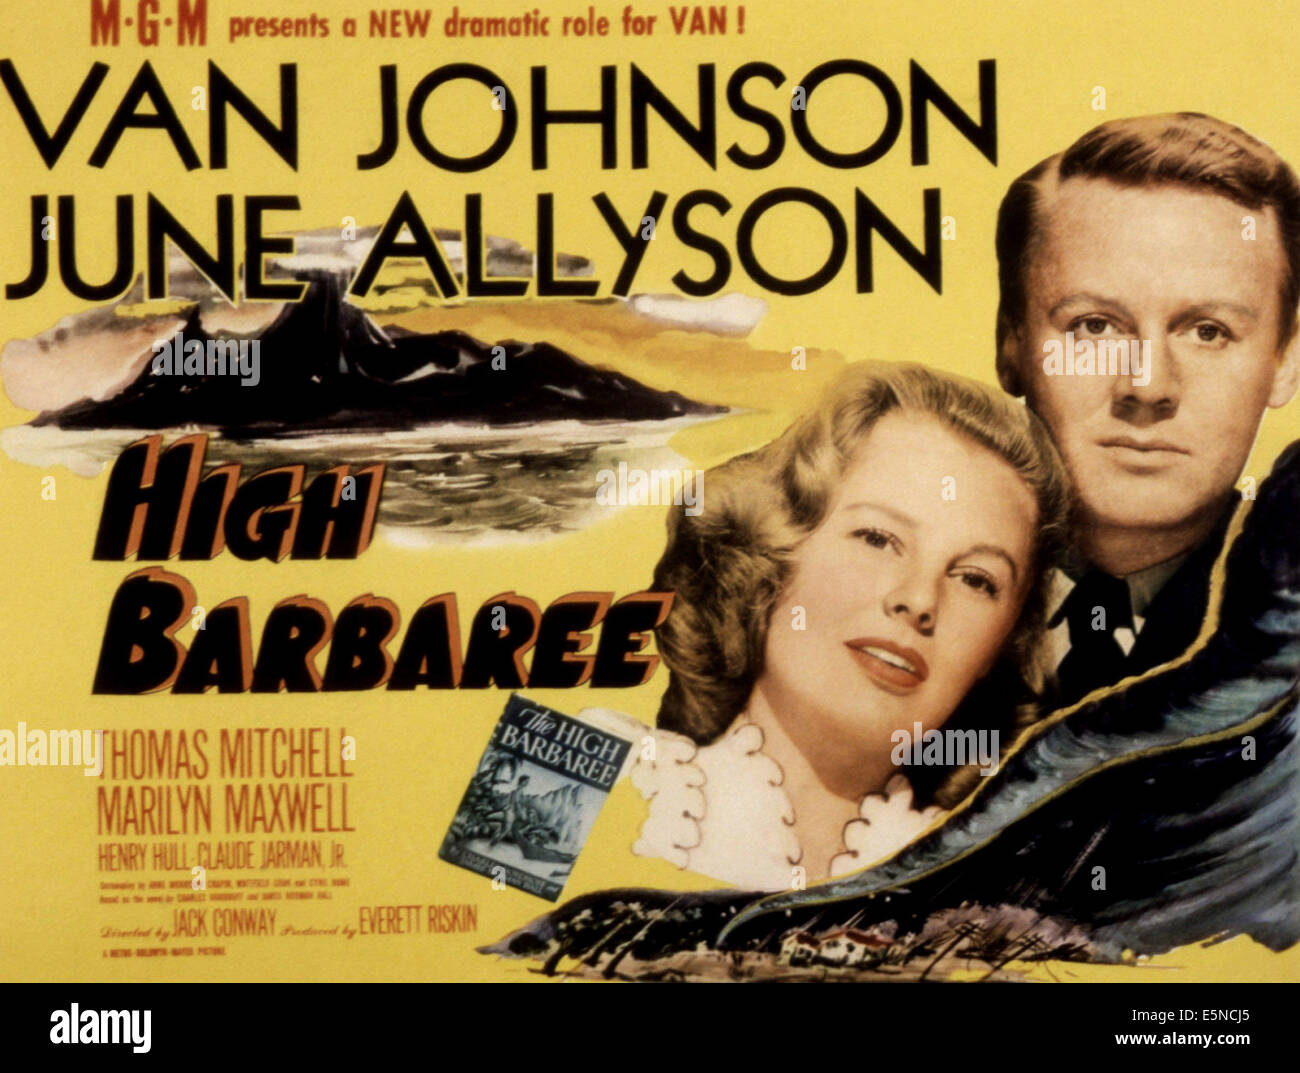 Alta BARBAREE, Junio Allyson, Van Johnson, 1947 Foto de stock